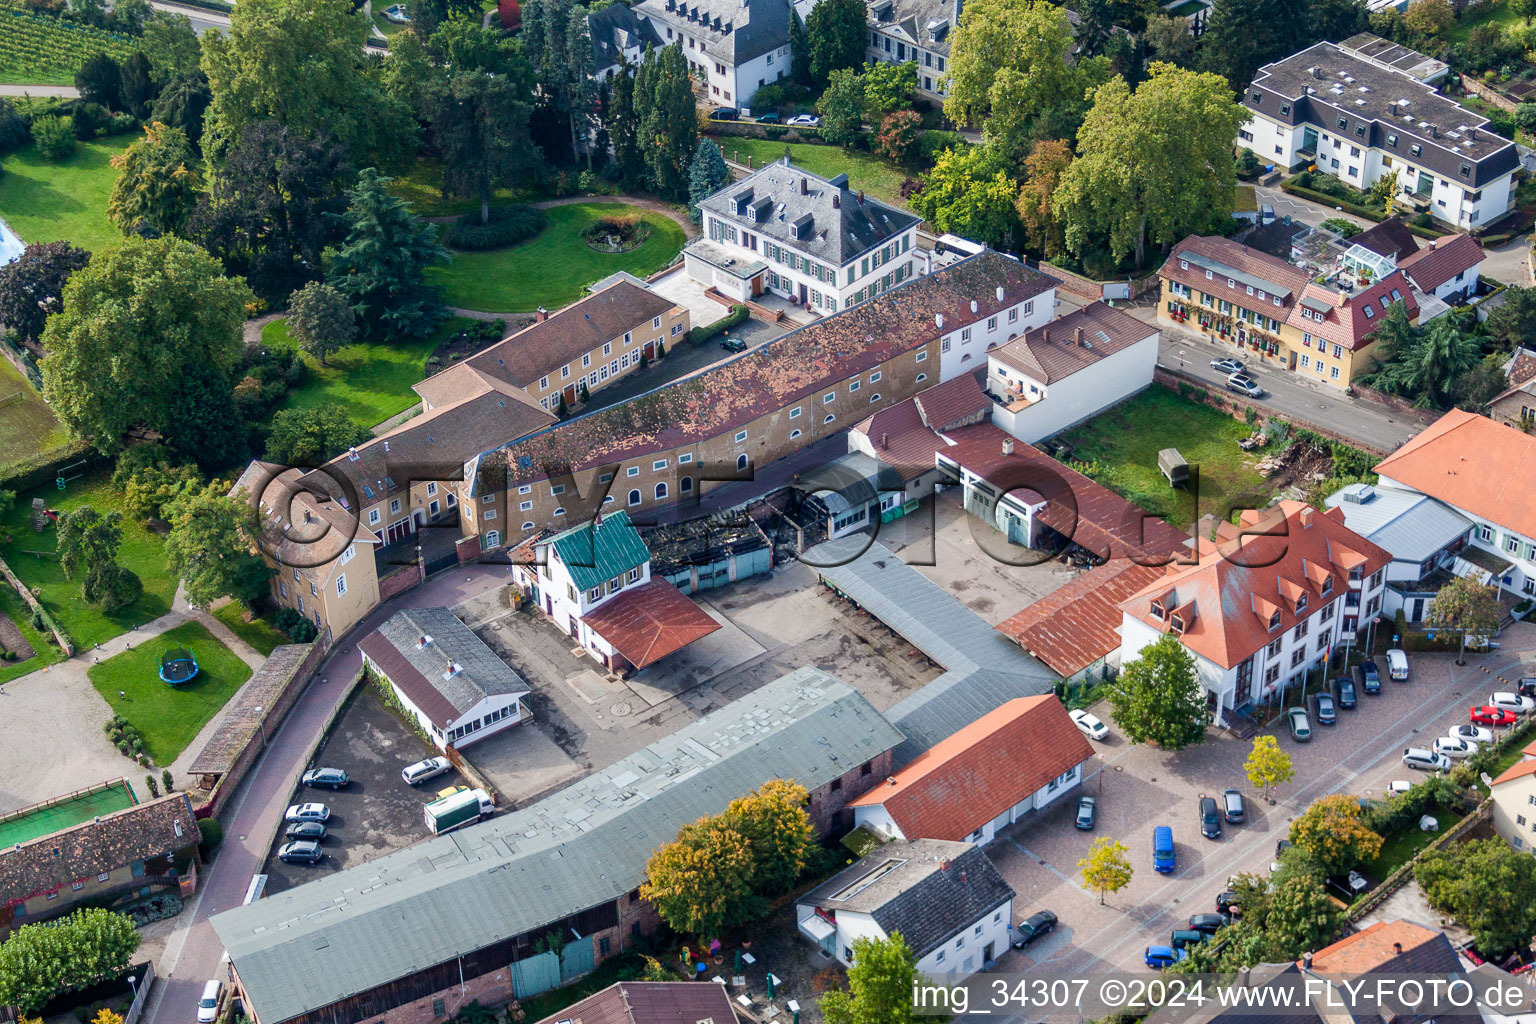 Luftbild von Gebäude und Parkanlagen am Weingut Dr. Bürklin-Wolf in Wachenheim an der Weinstraße im Bundesland Rheinland-Pfalz, Deutschland